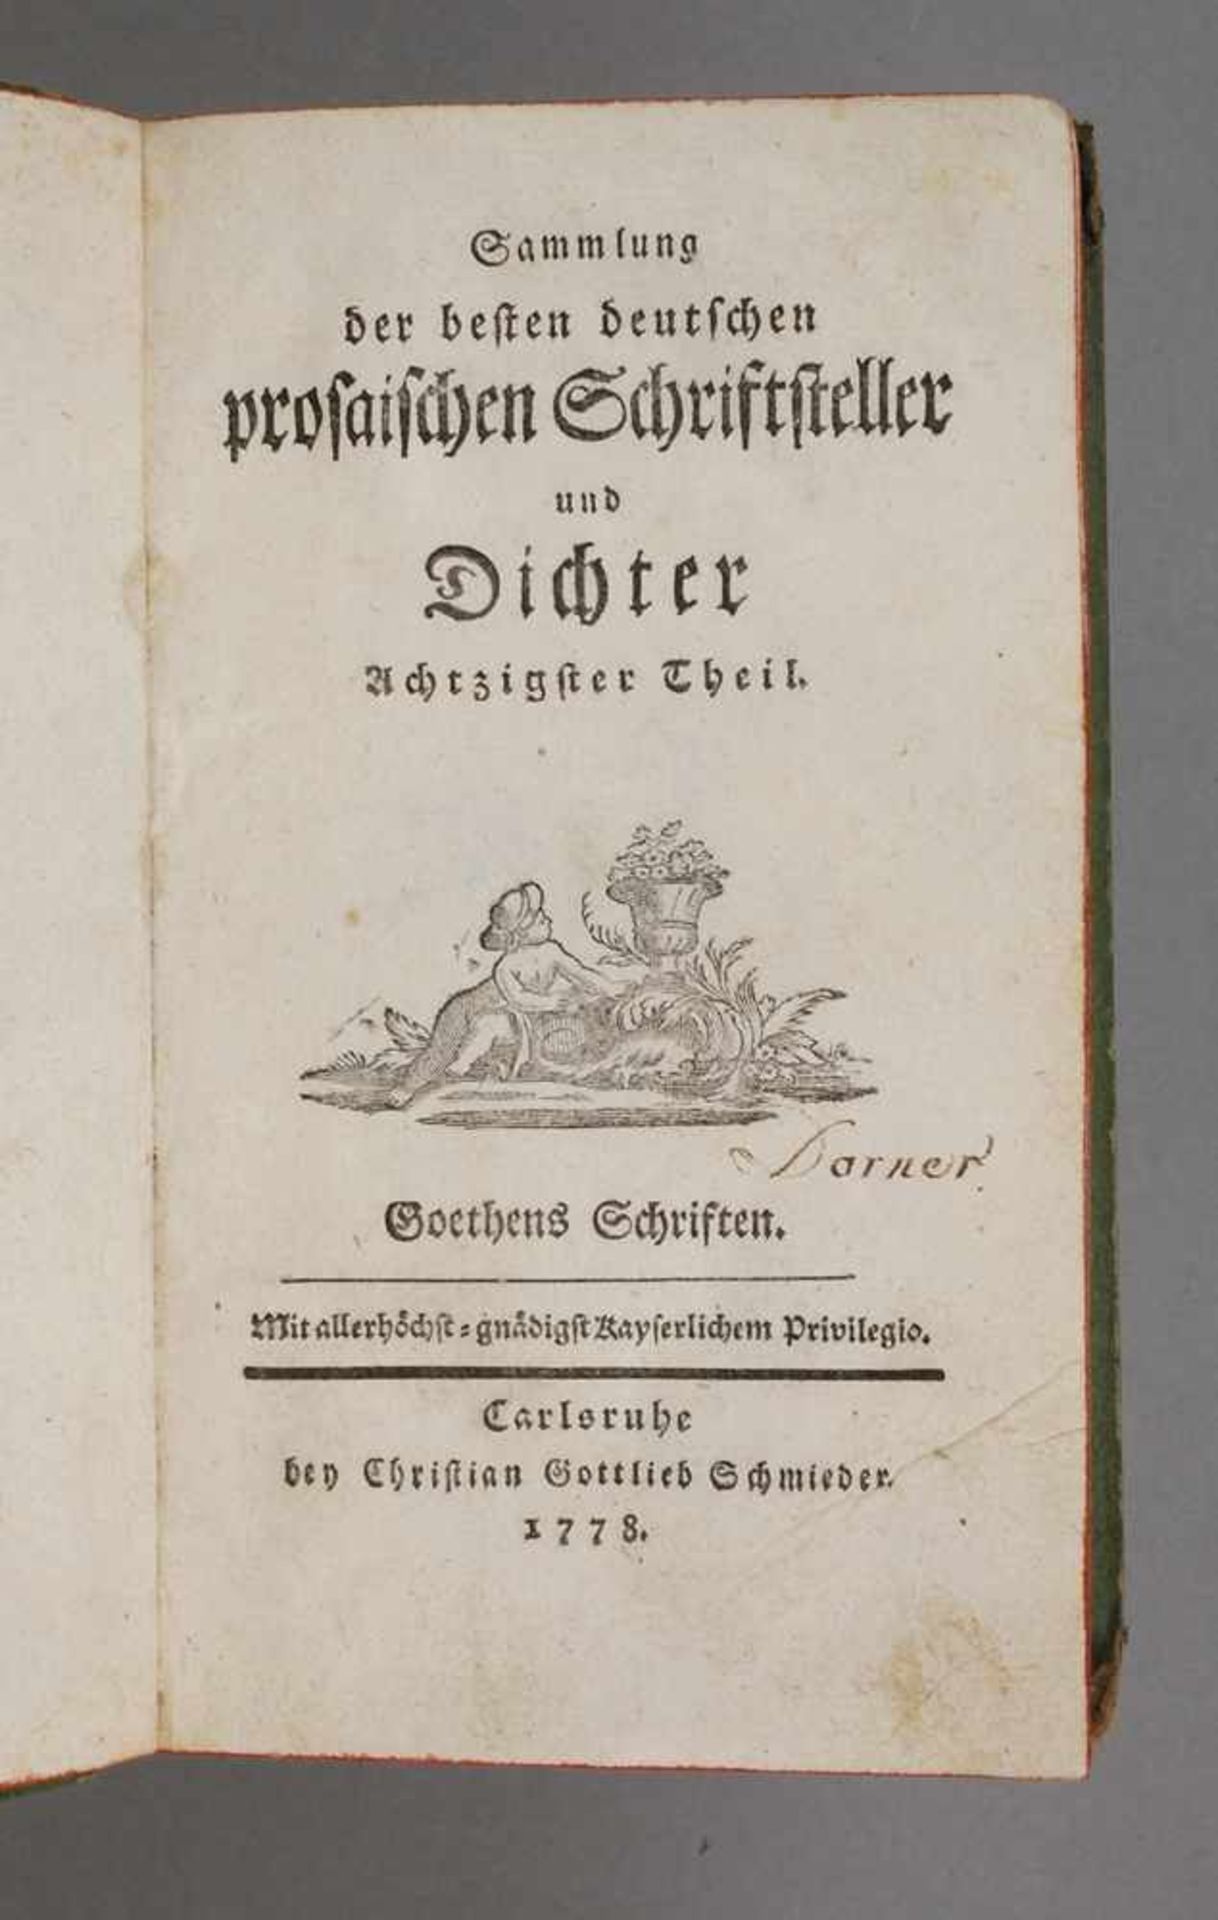 Goethe - Götz von Berlichingen und ClavigoSammlung der besten deutschen prosaischen Schriftsteller